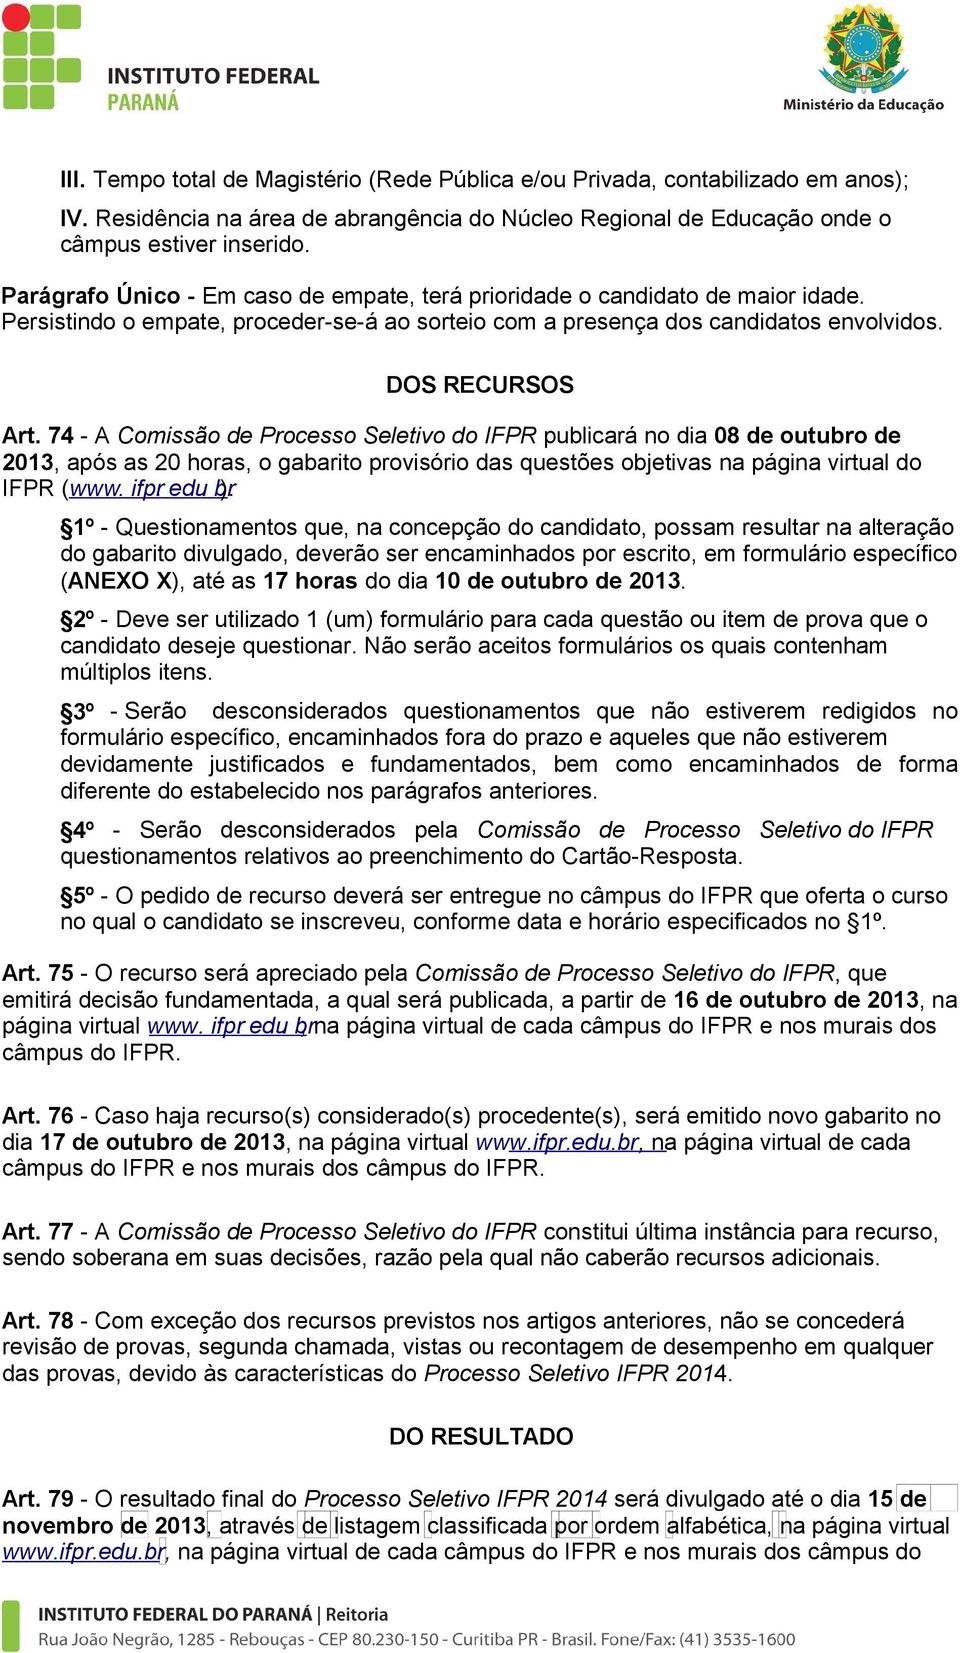 74 - A Comissão de Processo Seletivo do IFPR publicará no dia 08 de outubro de 2013, após as 20 horas, o gabarito provisório das questões objetivas na página virtual do IFPR (www. ifpr. edu. br ).